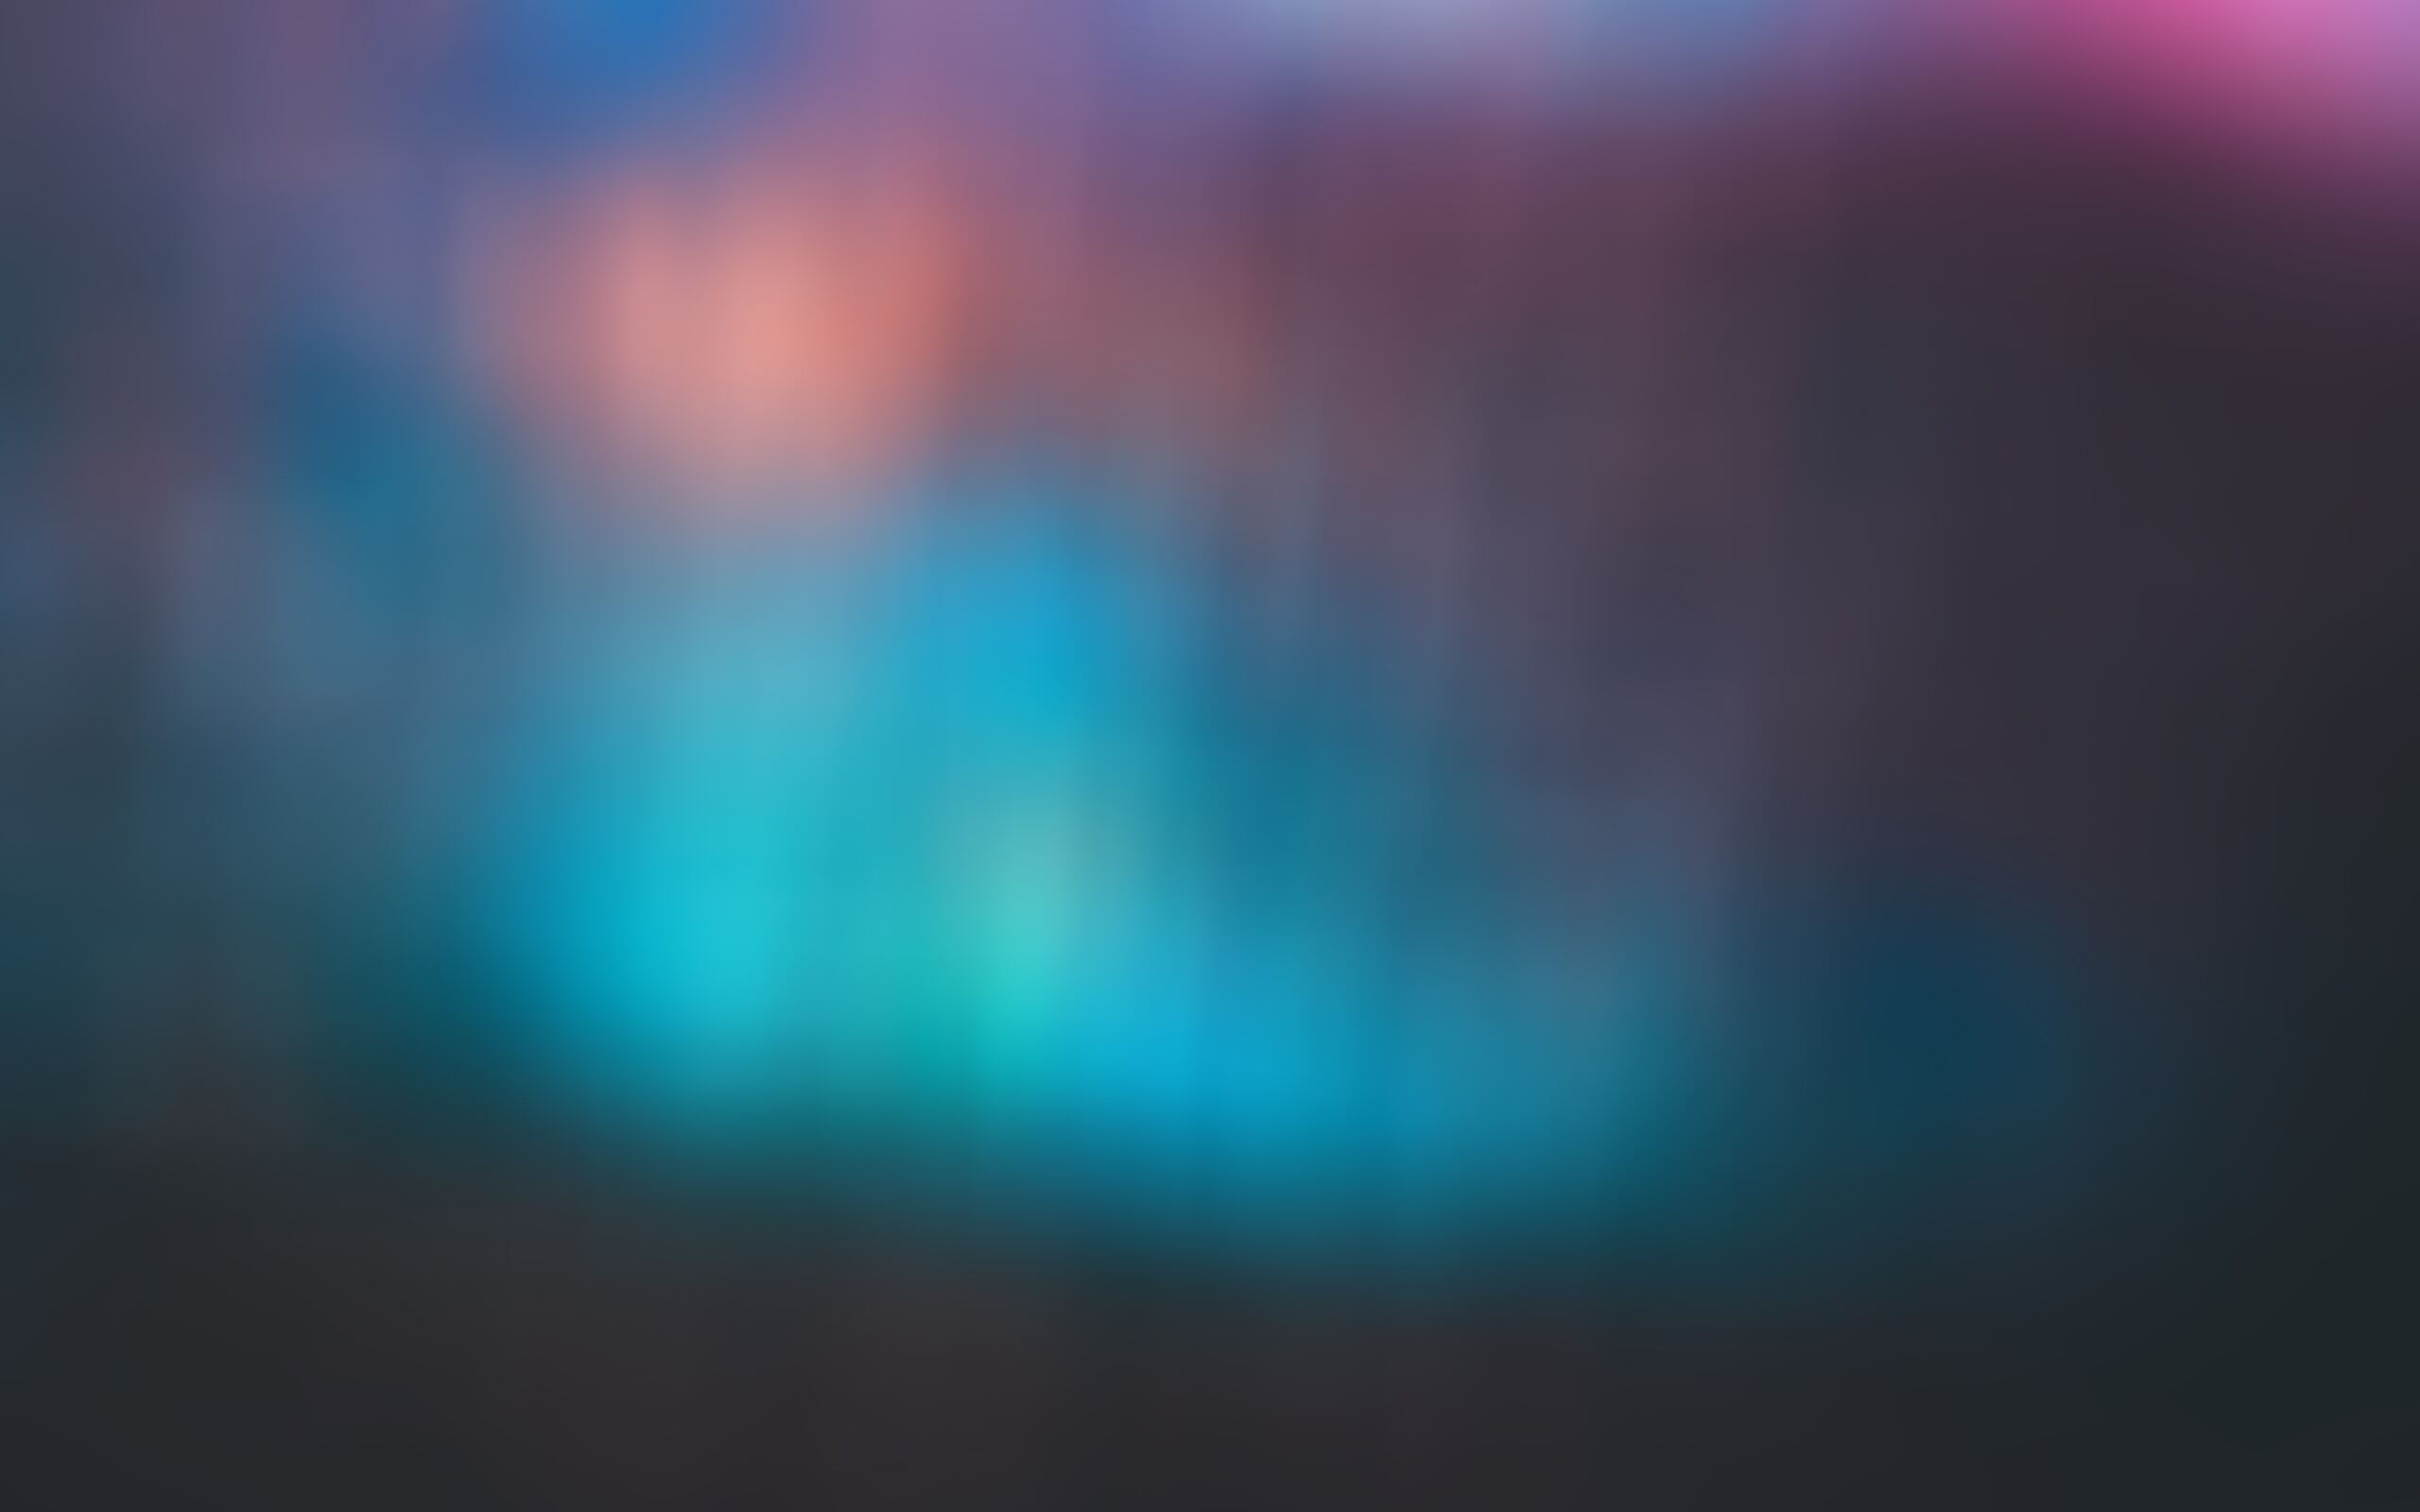 blur-blue-gradient-cool-background-sp.jpg